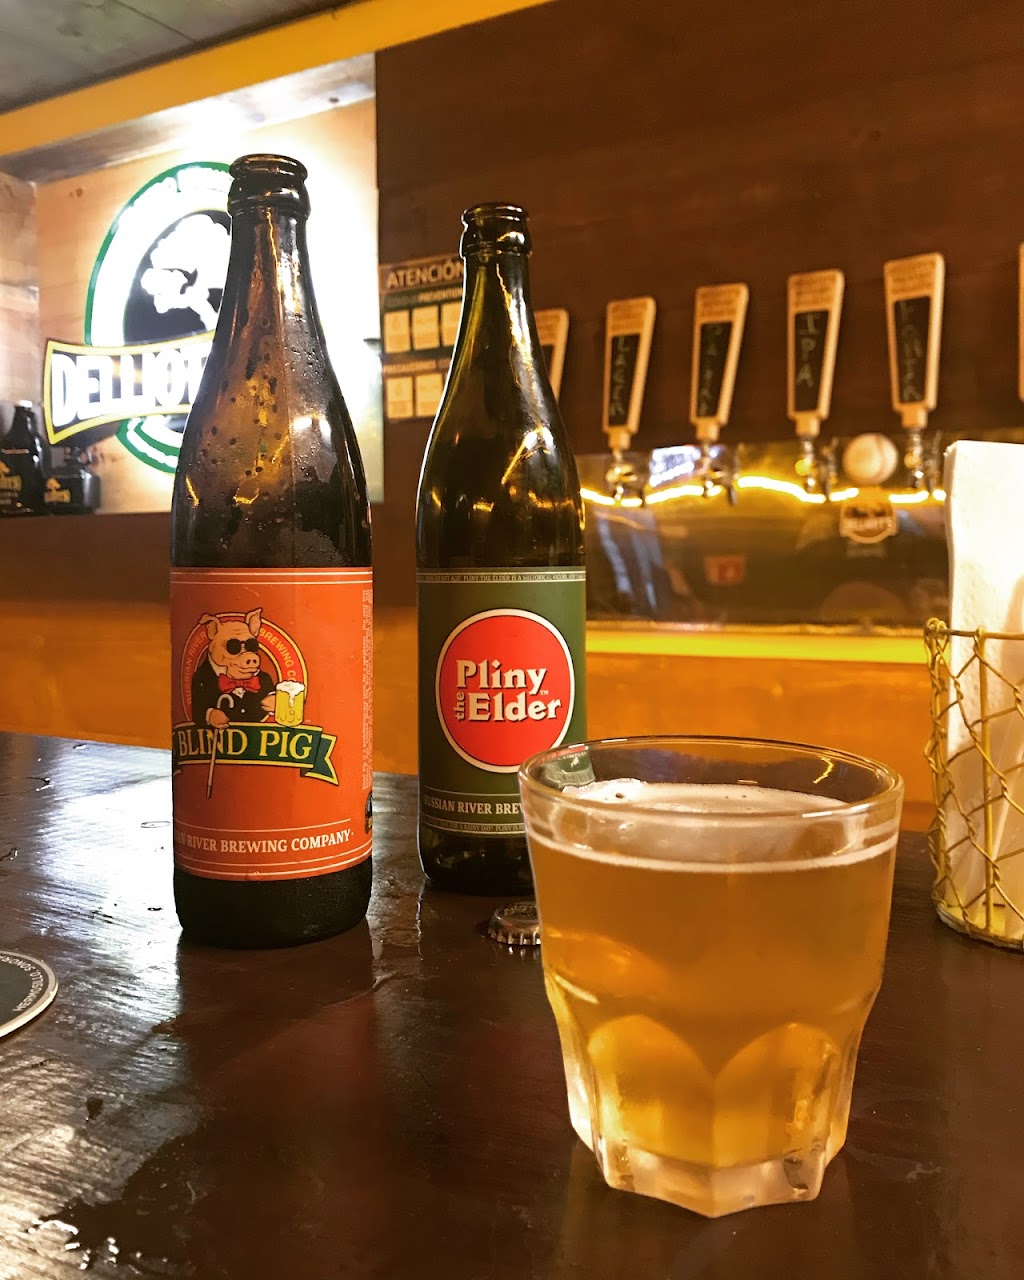 Cervecería Delliotts | Ensenada - Rosarito, Hermenegildo Cuenca Diaz, 22710 Rosarito, B.C., Mexico | Phone: 661 104 4394